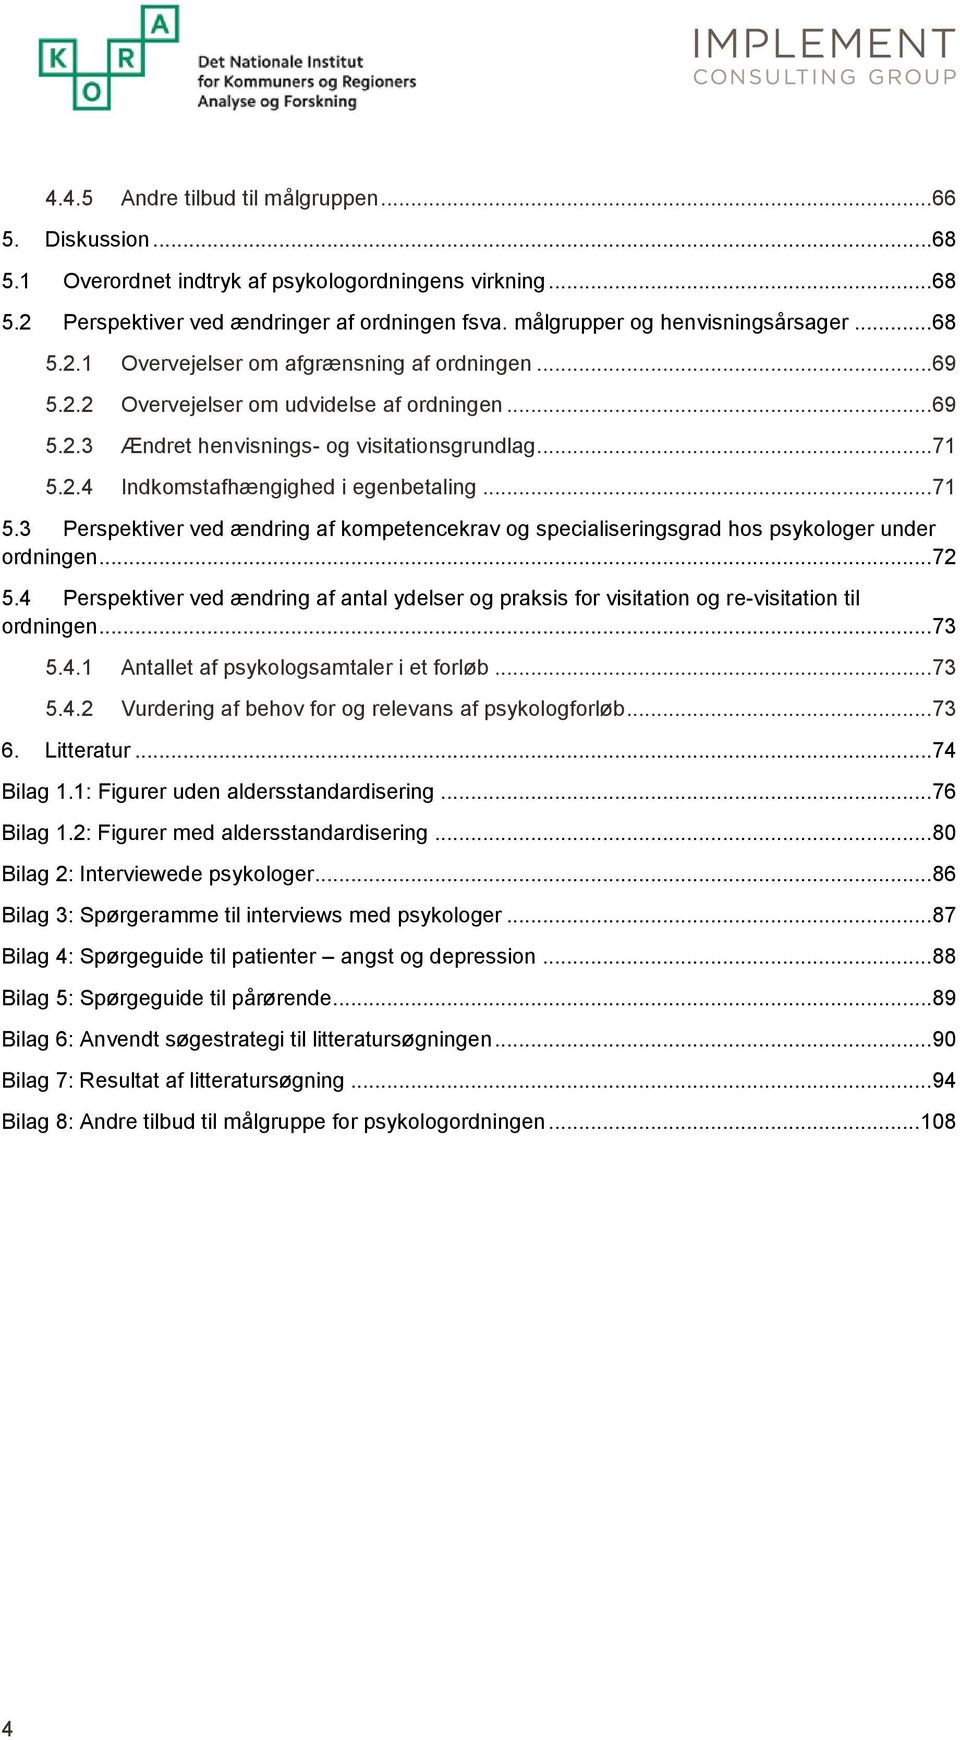 ..71 5.3 Perspektiver ved ændring af kompetencekrav og specialiseringsgrad hos psykologer under ordningen...72 5.